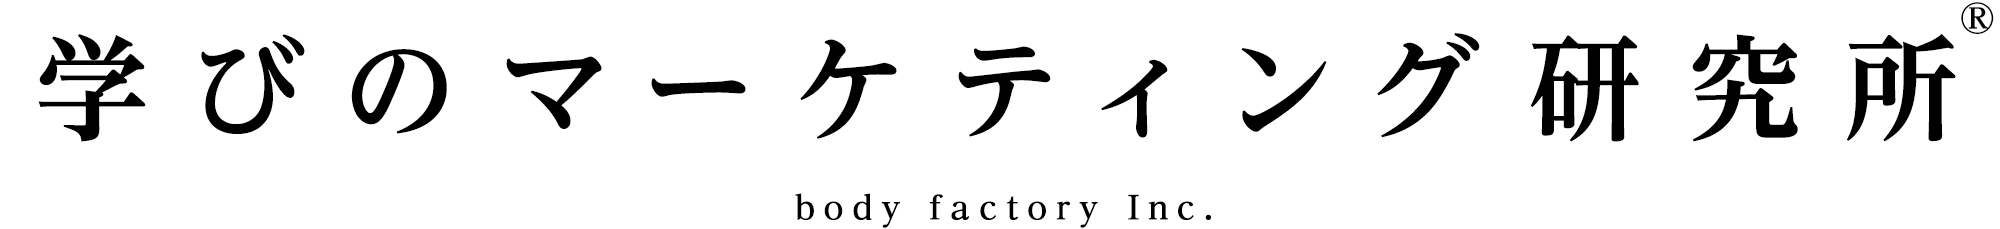 学びのマーケティング研究所 body factory Inc.